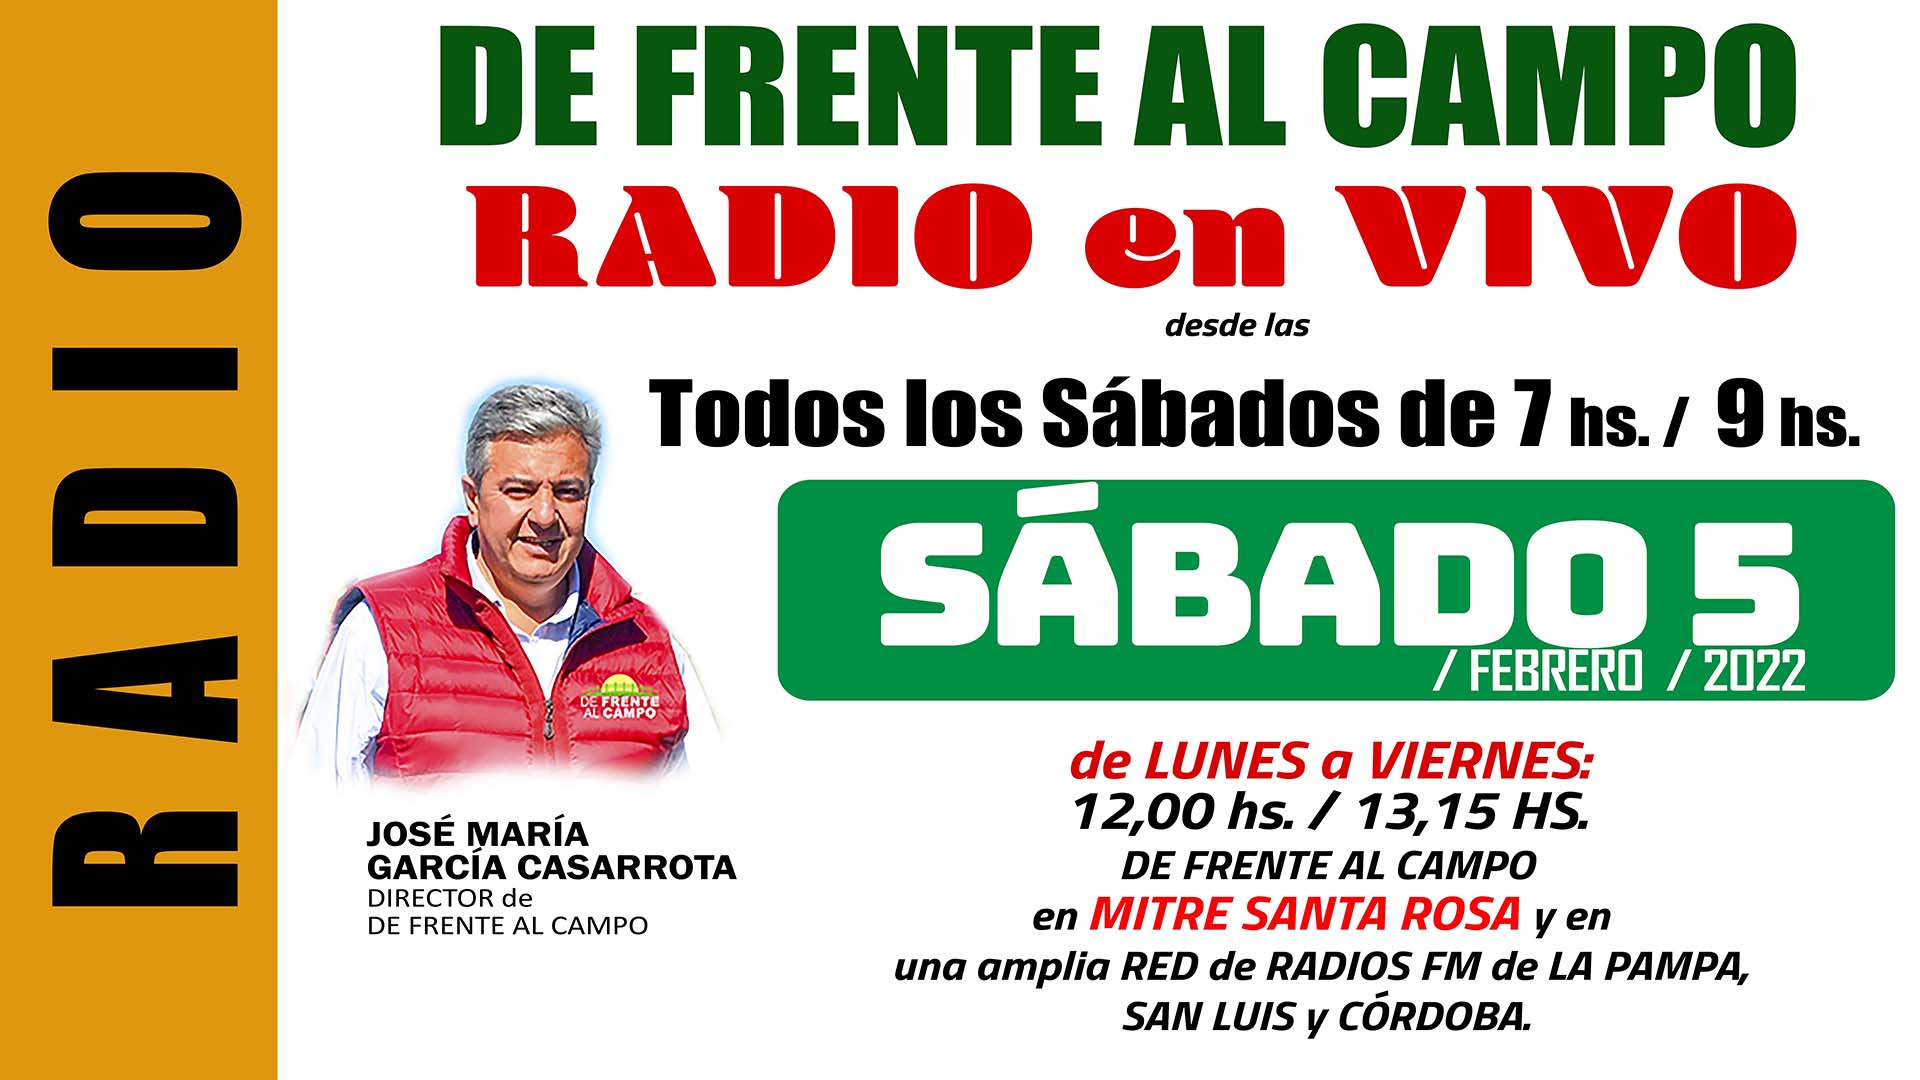 DFC en MITRE SANTA ROSA -FM 100,9 – SÁBADO 5 / FEBRERO / 2022-.